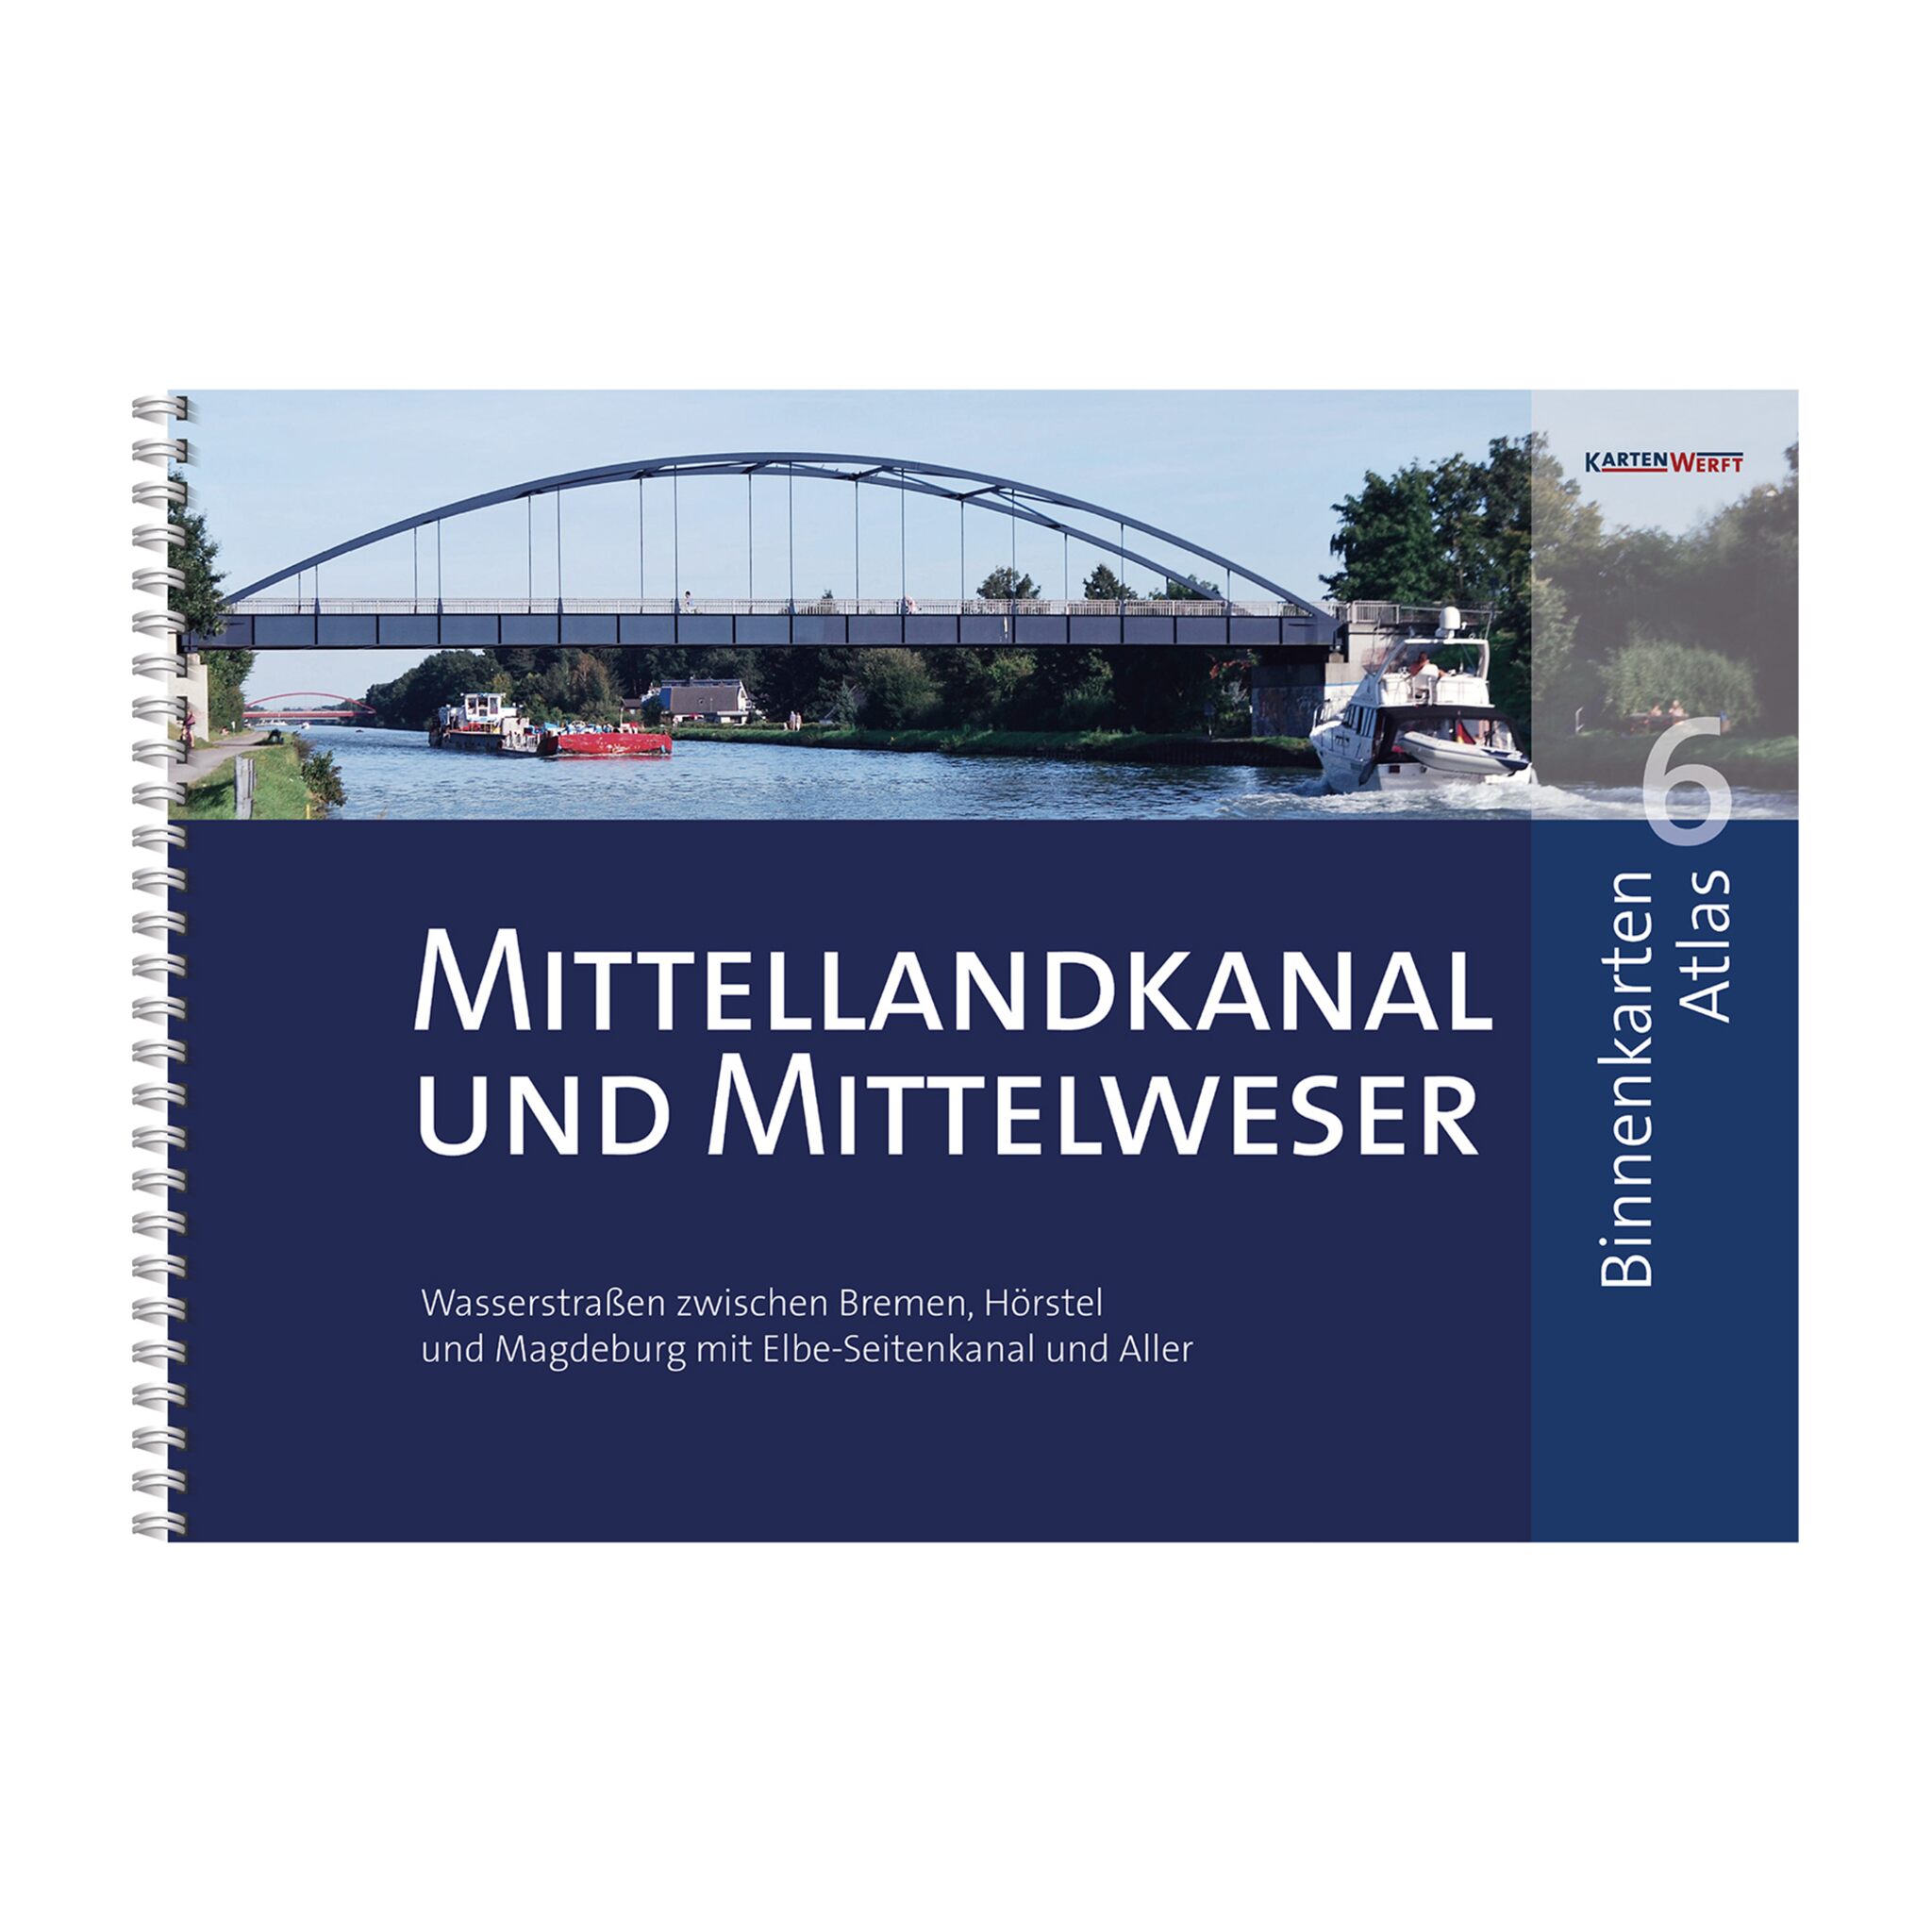 KartenWerft Binnenkarten Atlas 6 | Mittellandkanal und Mittelweser